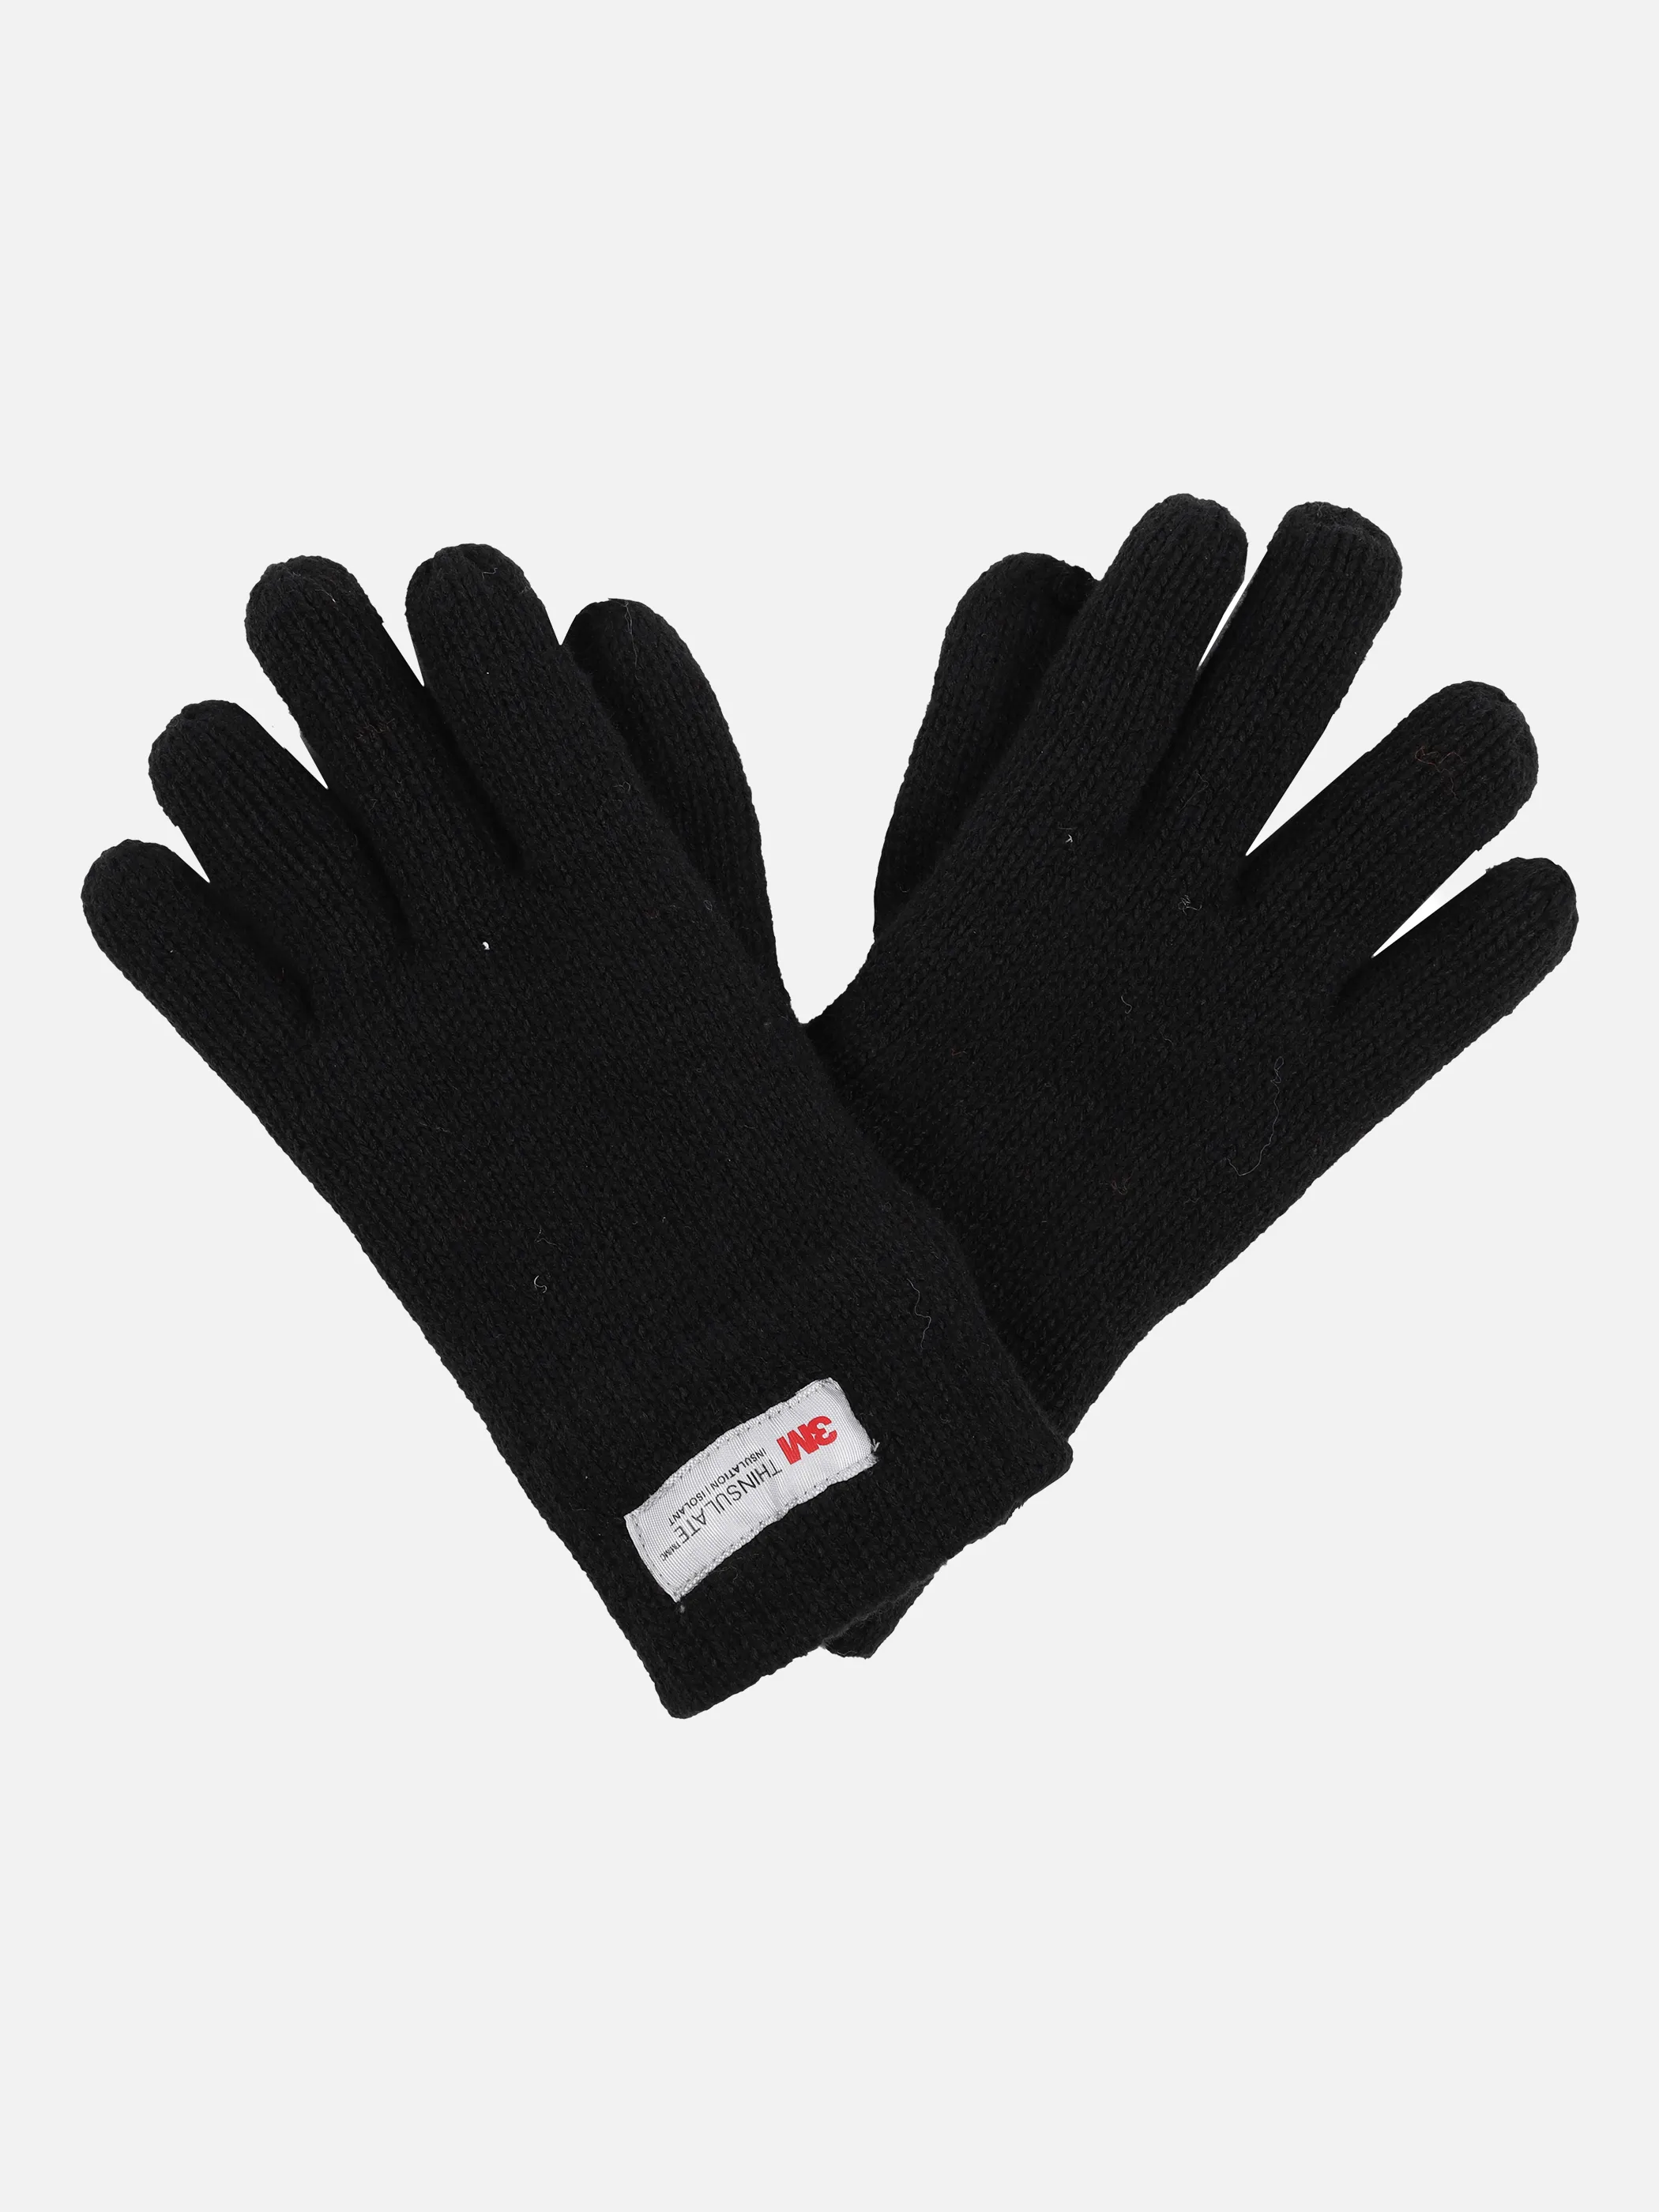 Stop + Go TU Handschuhe in schwarz mit Schwarz 870863 SCHWARZ 1